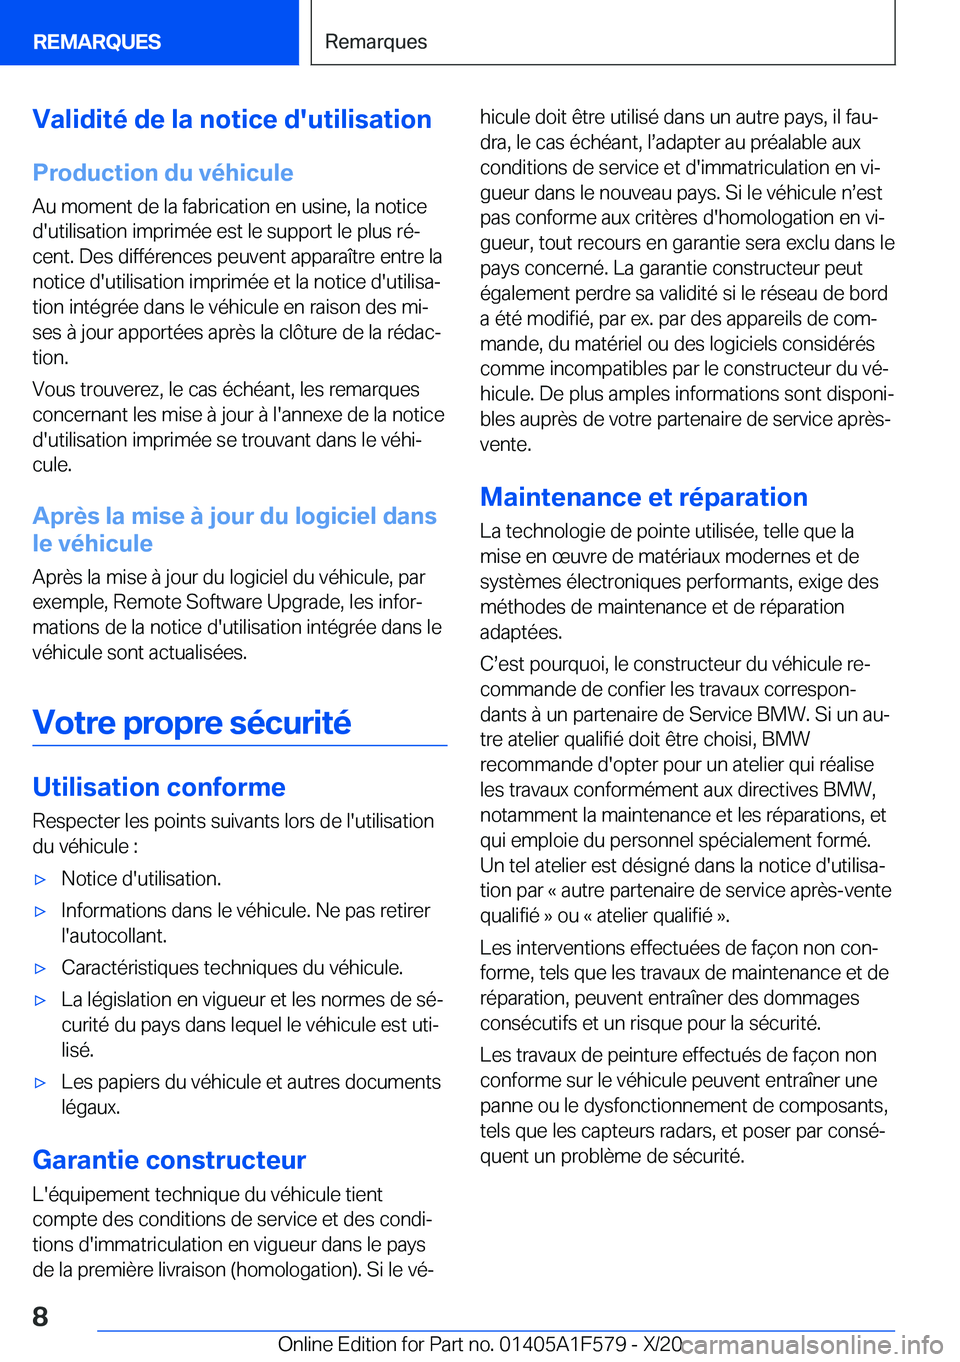 BMW X3 M 2021  Notices Demploi (in French) �V�a�l�i�d�i�t�é��d�e��l�a��n�o�t�i�c�e��d�'�u�t�i�l�i�s�a�t�i�o�n
�P�r�o�d�u�c�t�i�o�n��d�u��v�é�h�i�c�u�l�e
�A�u��m�o�m�e�n�t��d�e��l�a��f�a�b�r�i�c�a�t�i�o�n��e�n��u�s�i�n�e�,��l